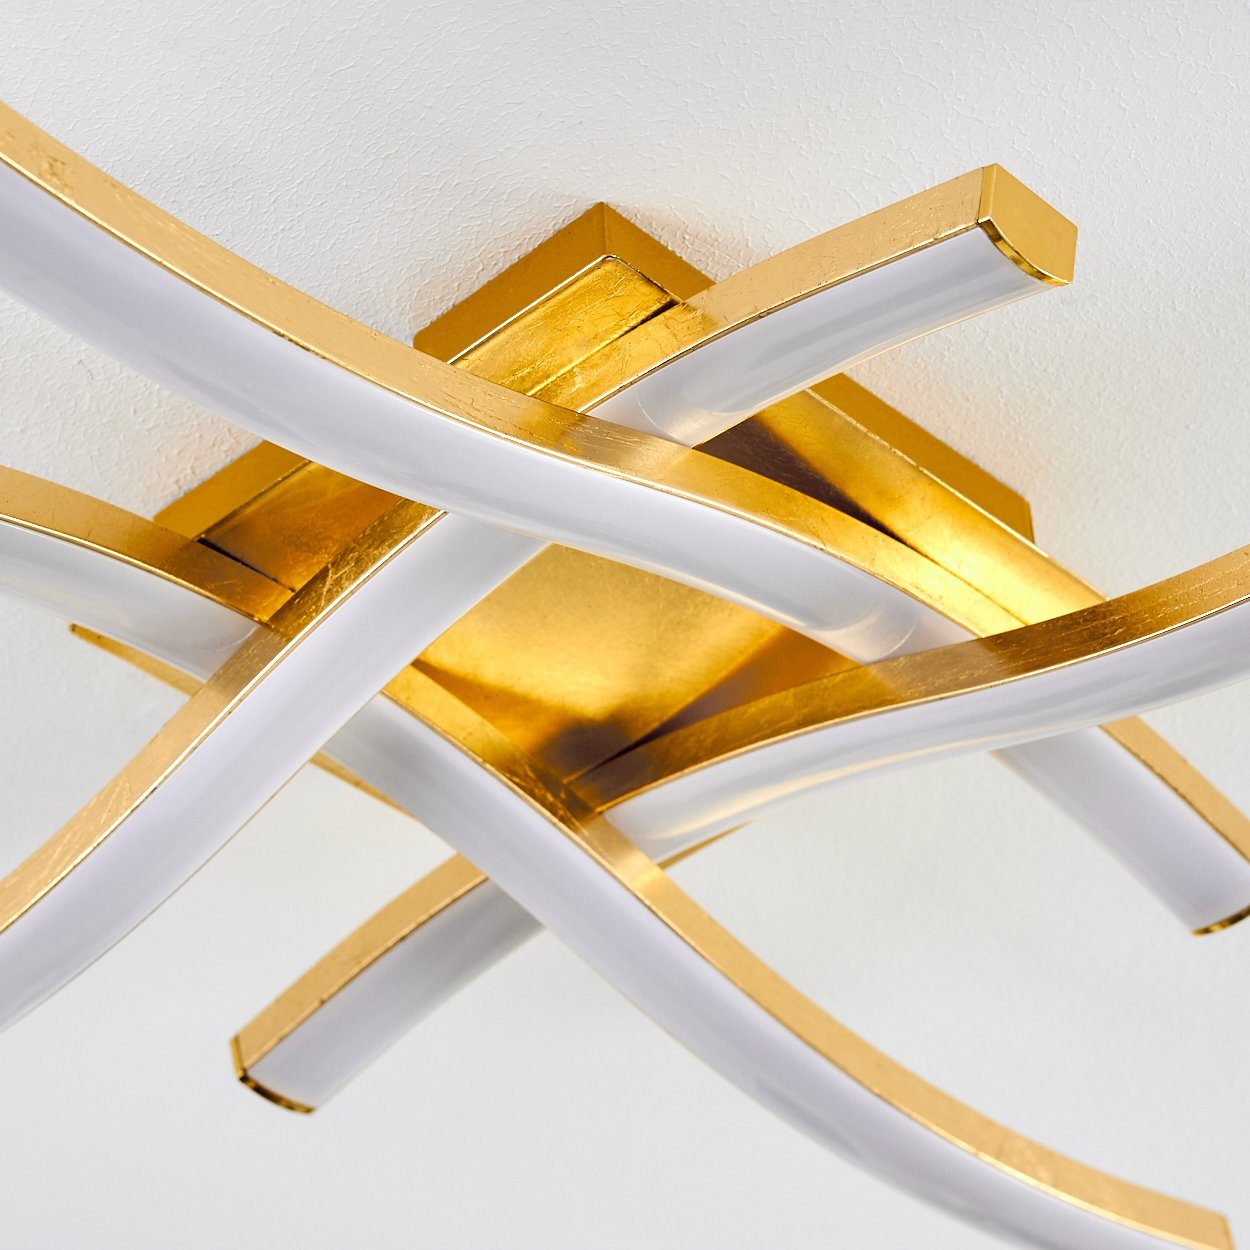 2600 Metall/Kunststoff Deckenleuchte Kelvin, hofstein moderne aus Leuchte »Mira« 3000 Lumen, Rautenform in Watt, in Gold/Weiß, 4x5 LED Deckenlampe